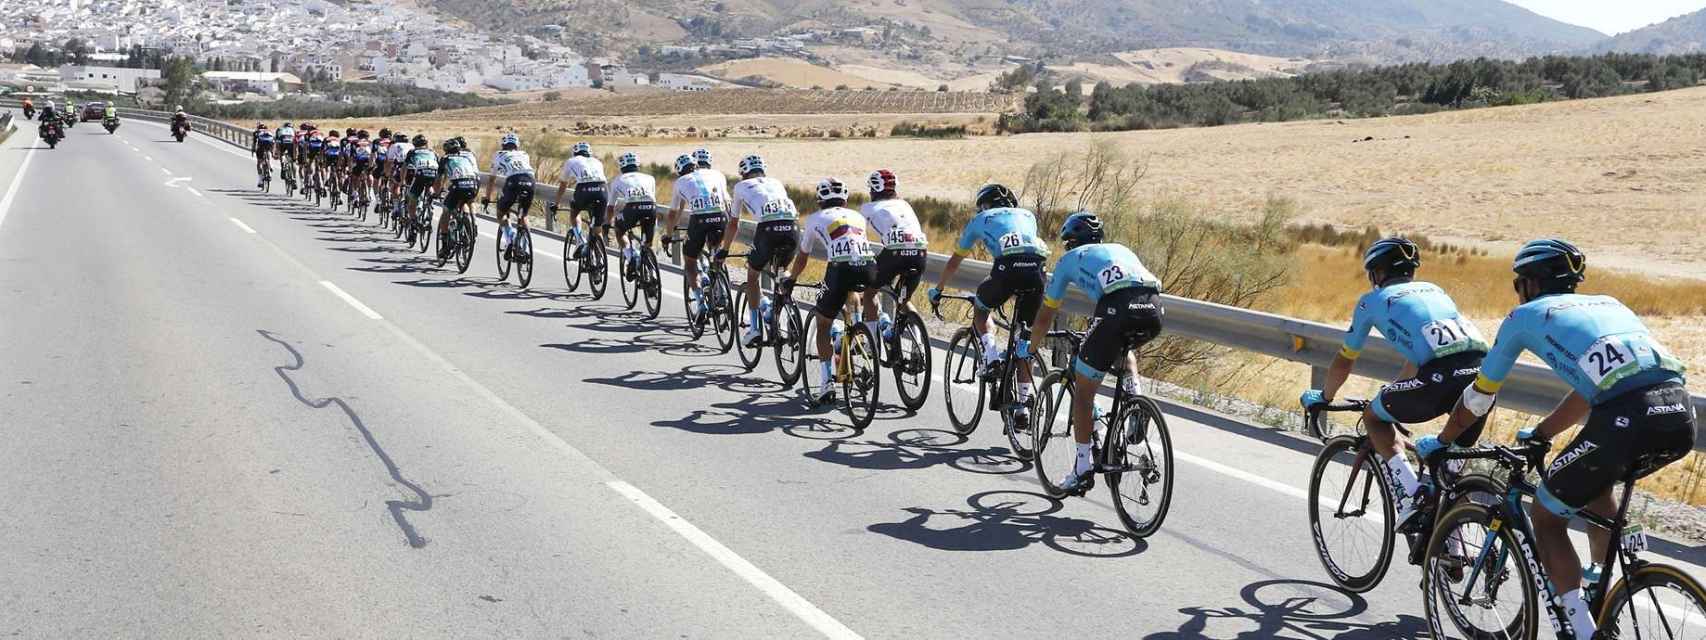 El pelotón de la Vuelta a España